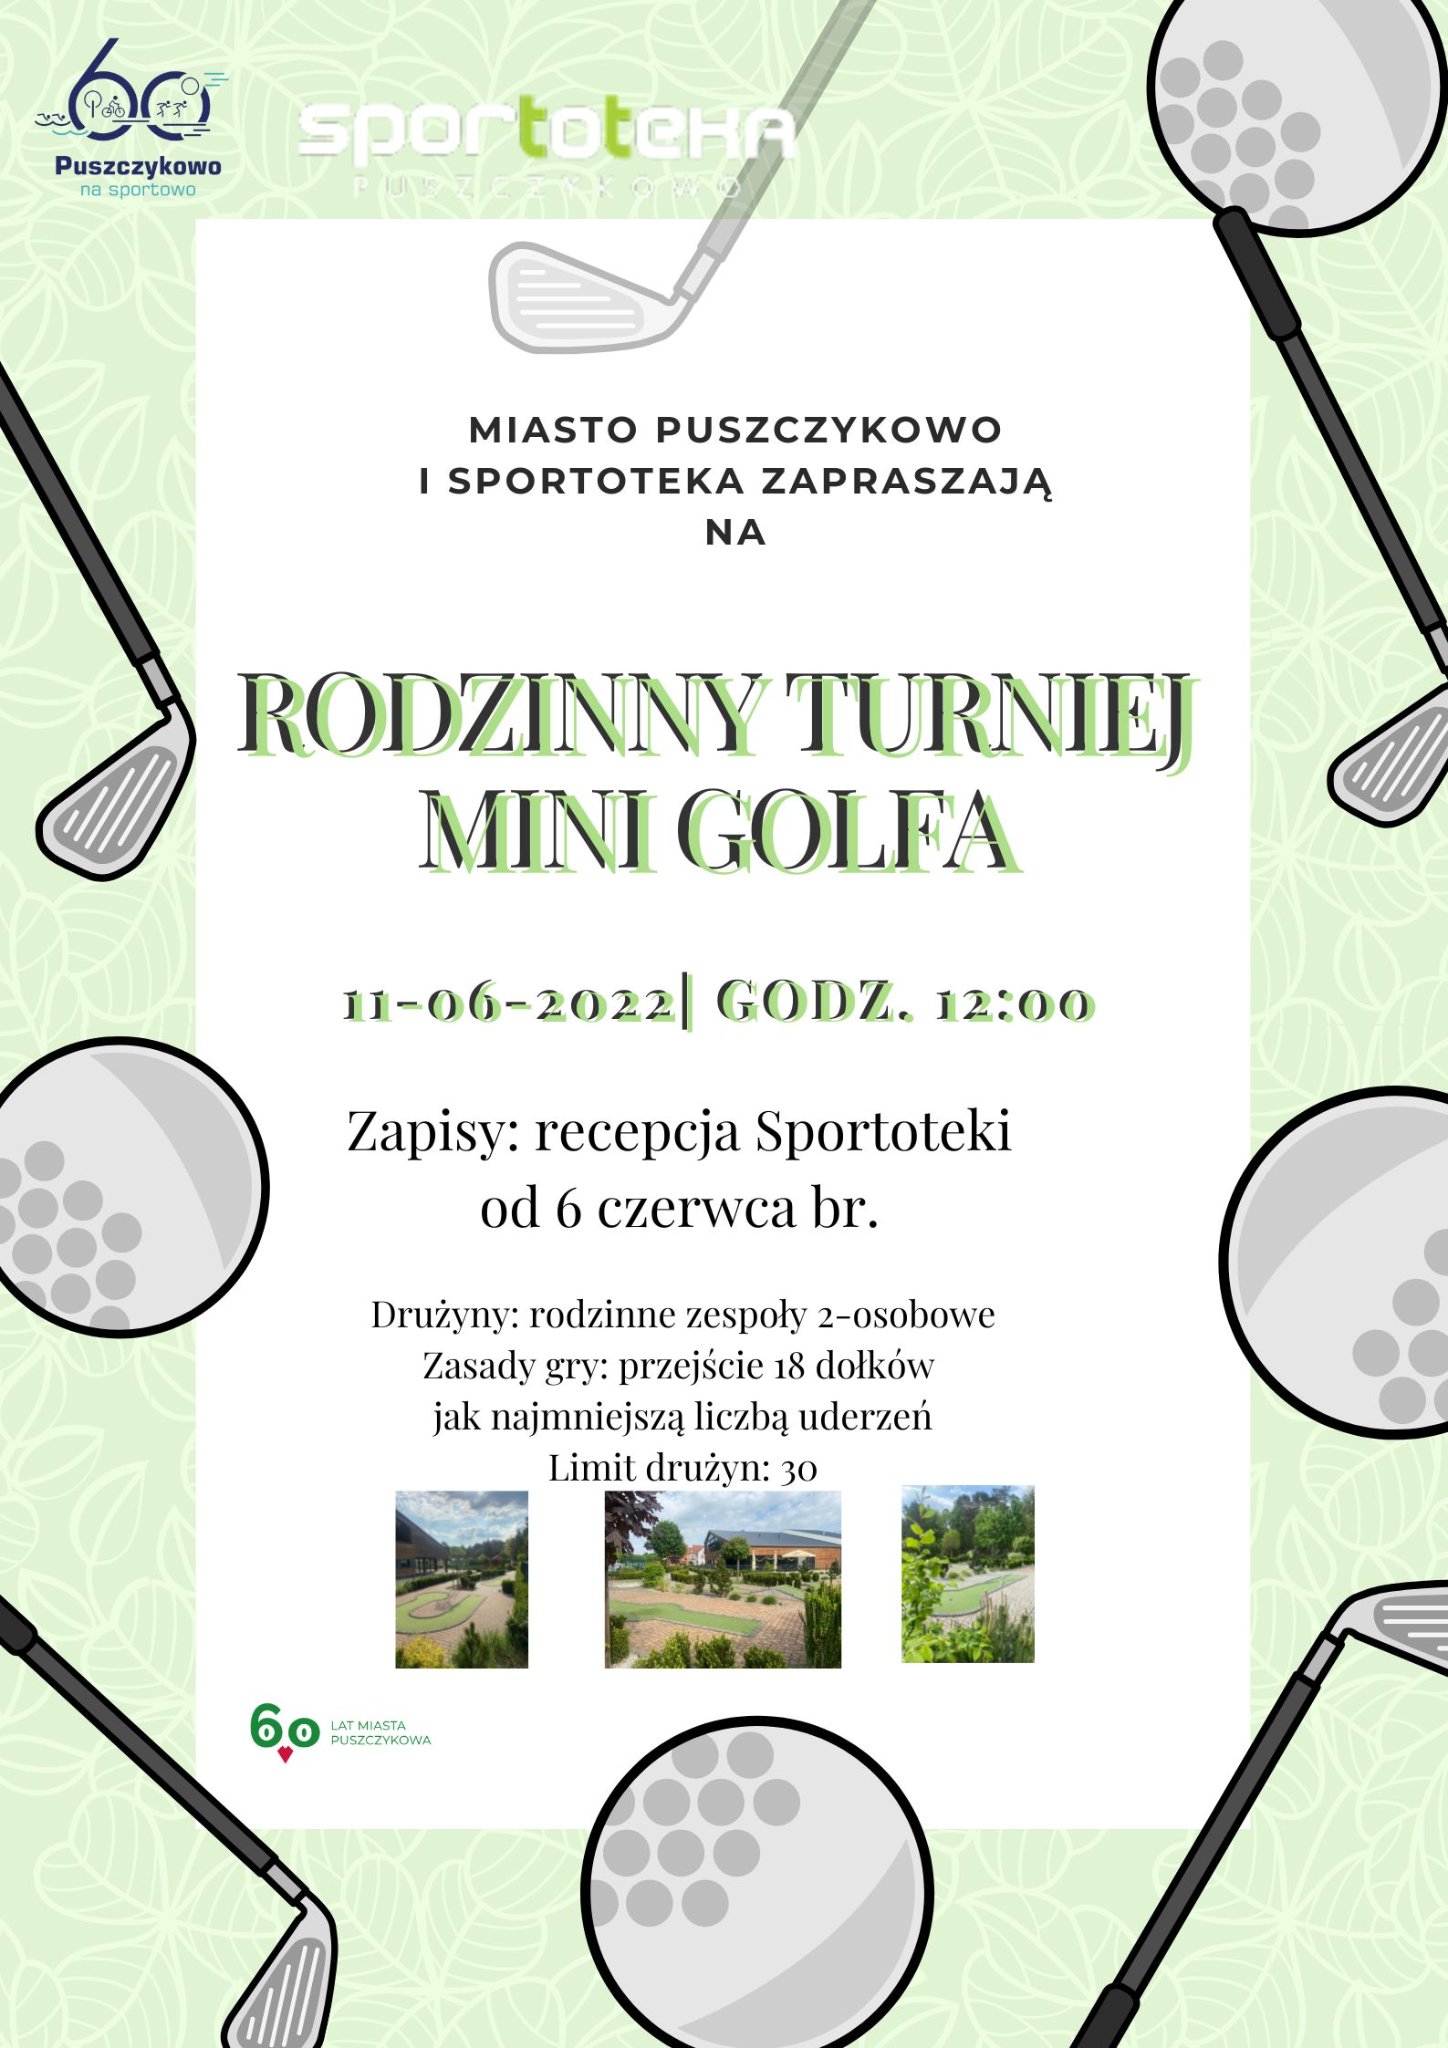 Już w najbliższą sobotę - w ramach Dni Puszczykowa - zapraszamy na Rodzinny Turniej Mini Golfa.